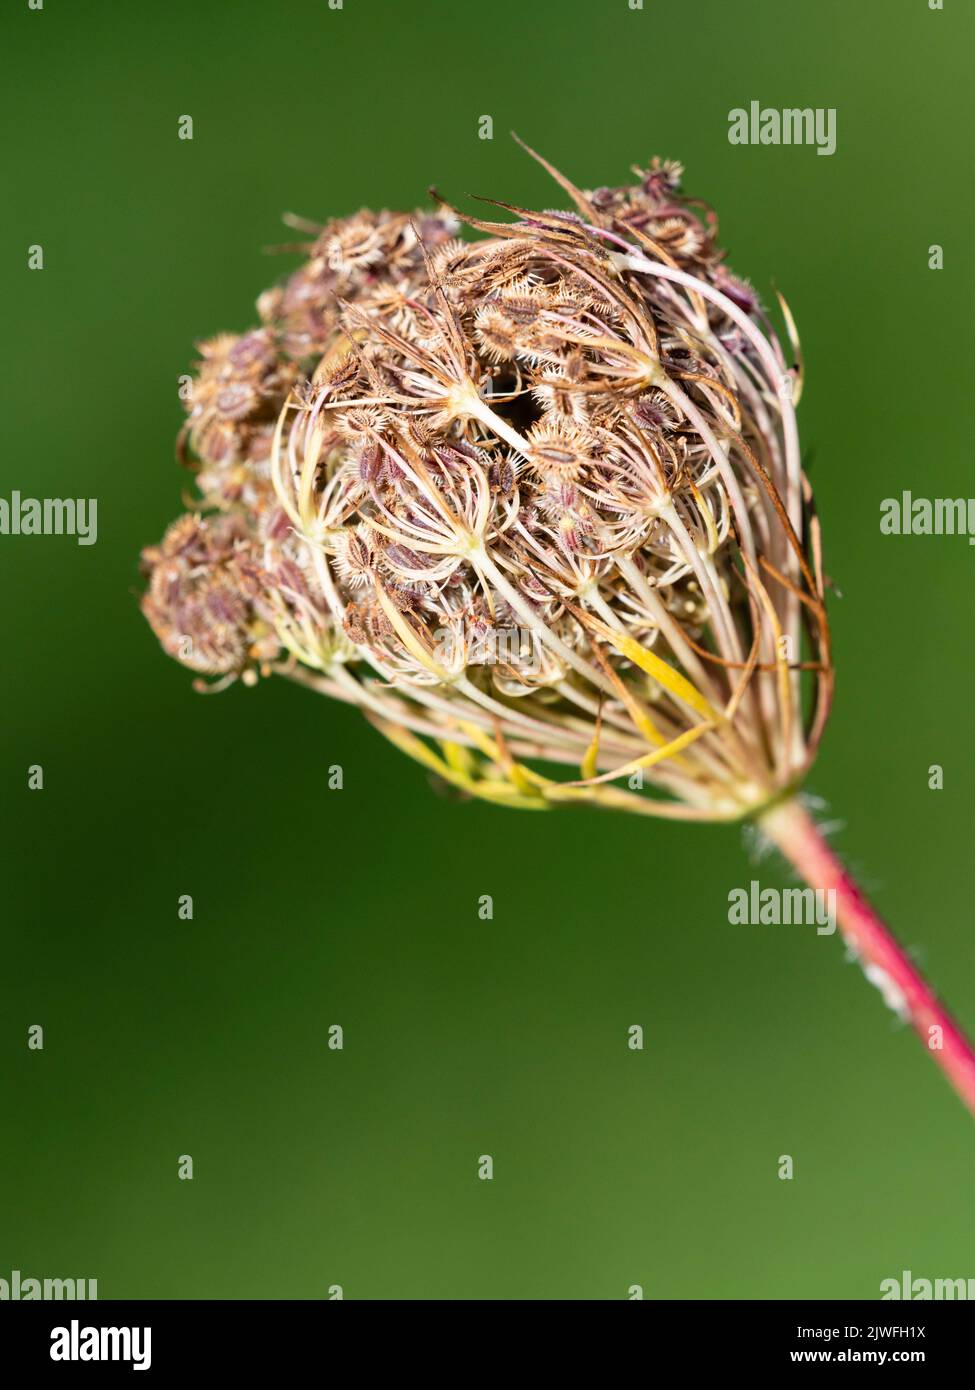 Jaula de semillas con semillas de la dura bienal británica, Daucus carota, Queen Anne's Lace Foto de stock